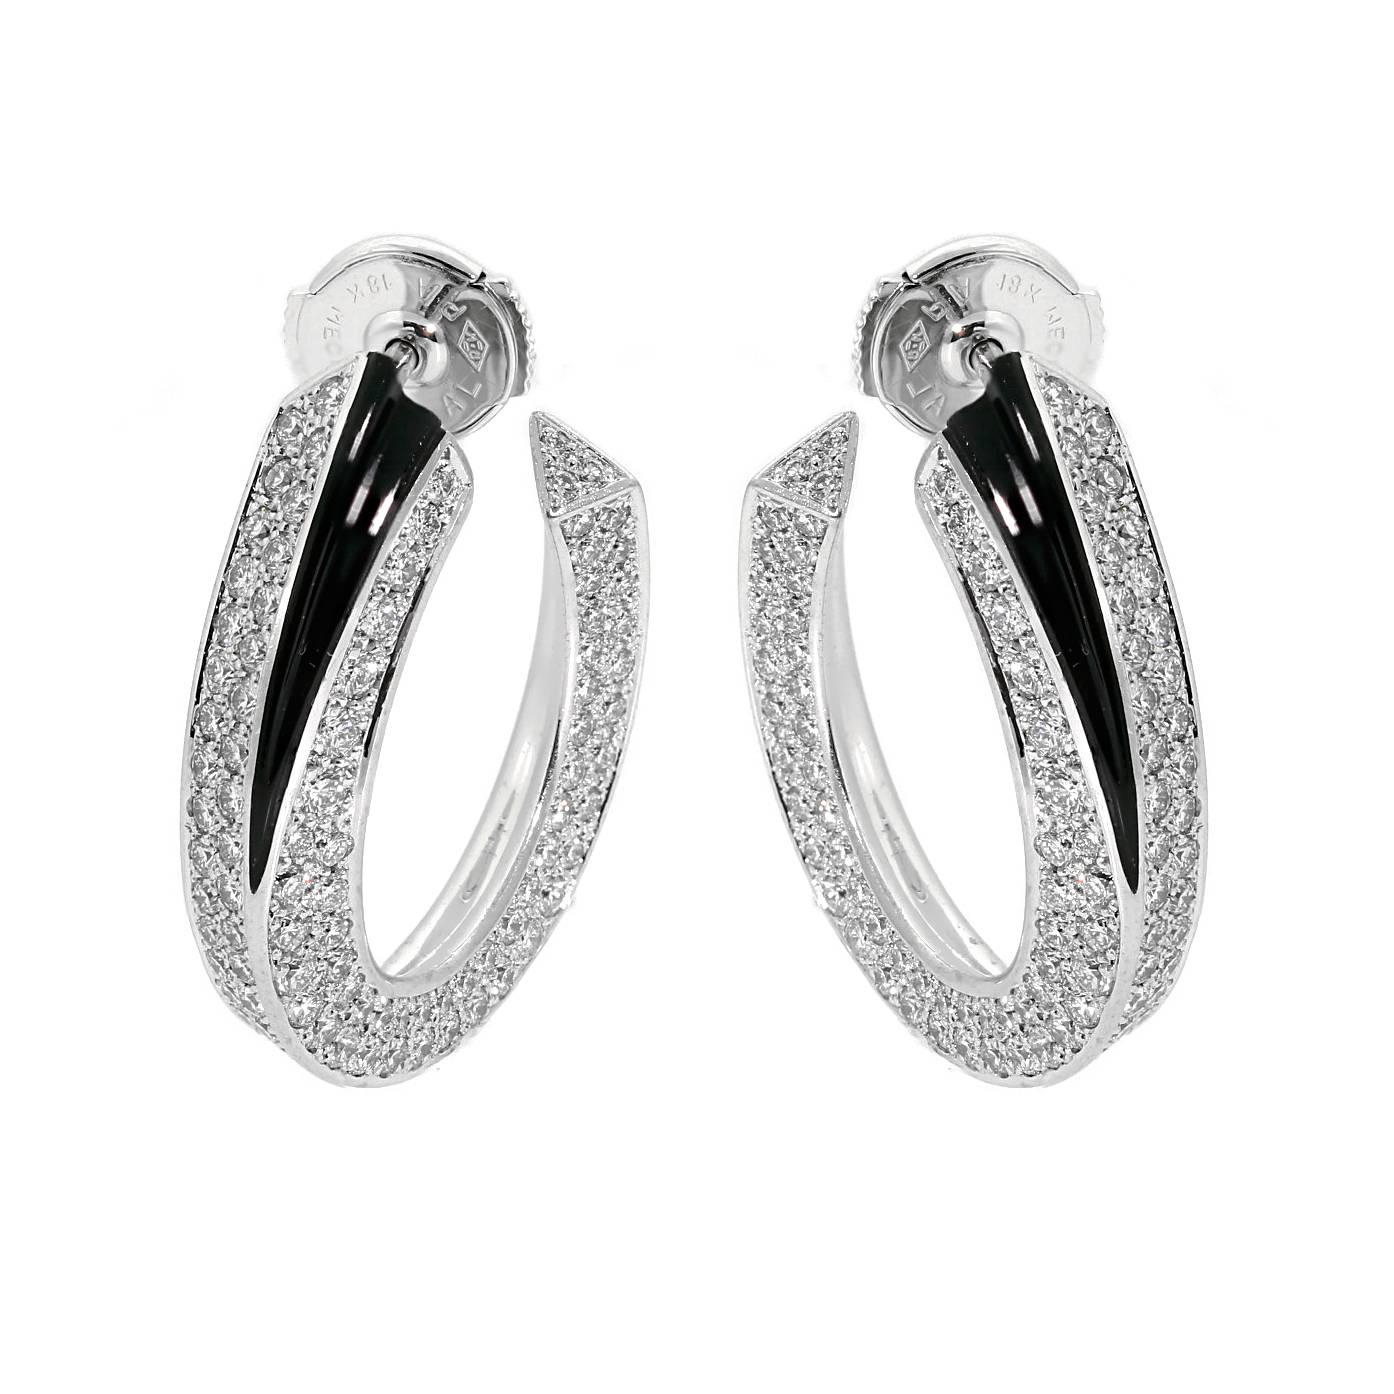 Une magnifique paire de boucles d'oreilles Panthère de Cartier ornée de 5cts appx de diamants ronds de taille brillant de Cartier en or blanc 18k.

Largeur de la boucle d'oreille : 0,25